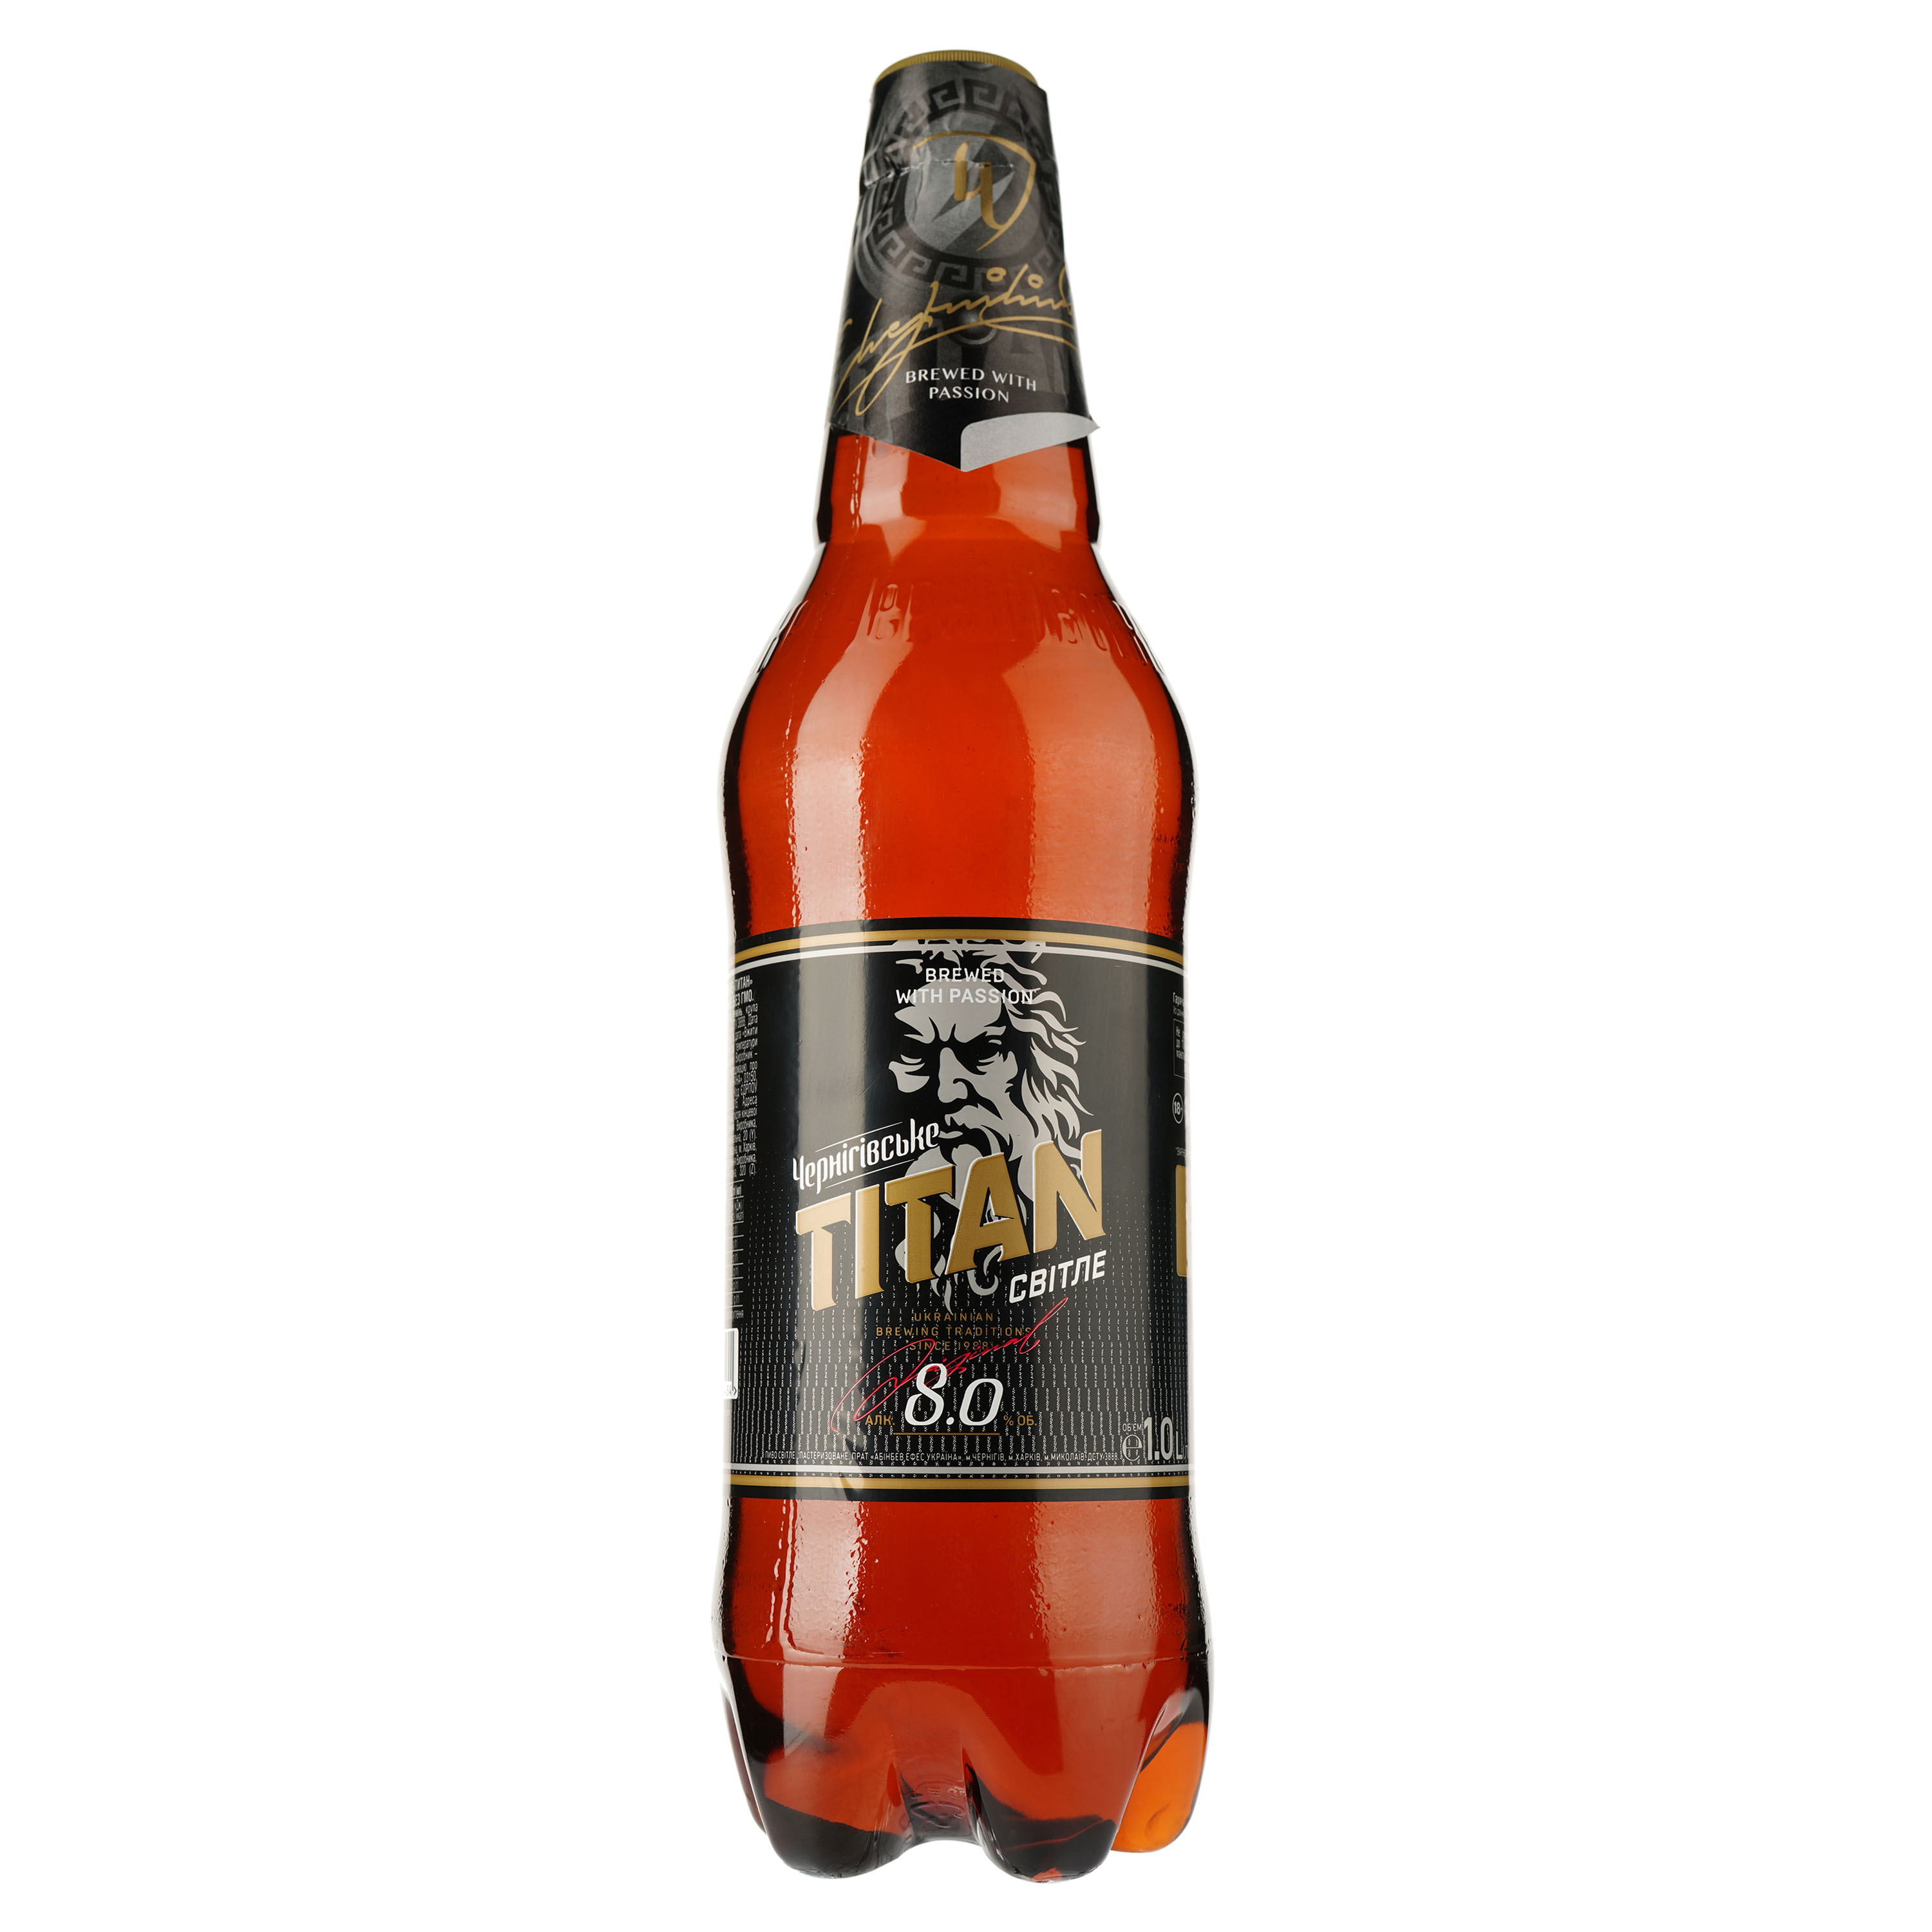 Пиво Чернігівське Titan, светлое, 8%, 1 л - фото 1